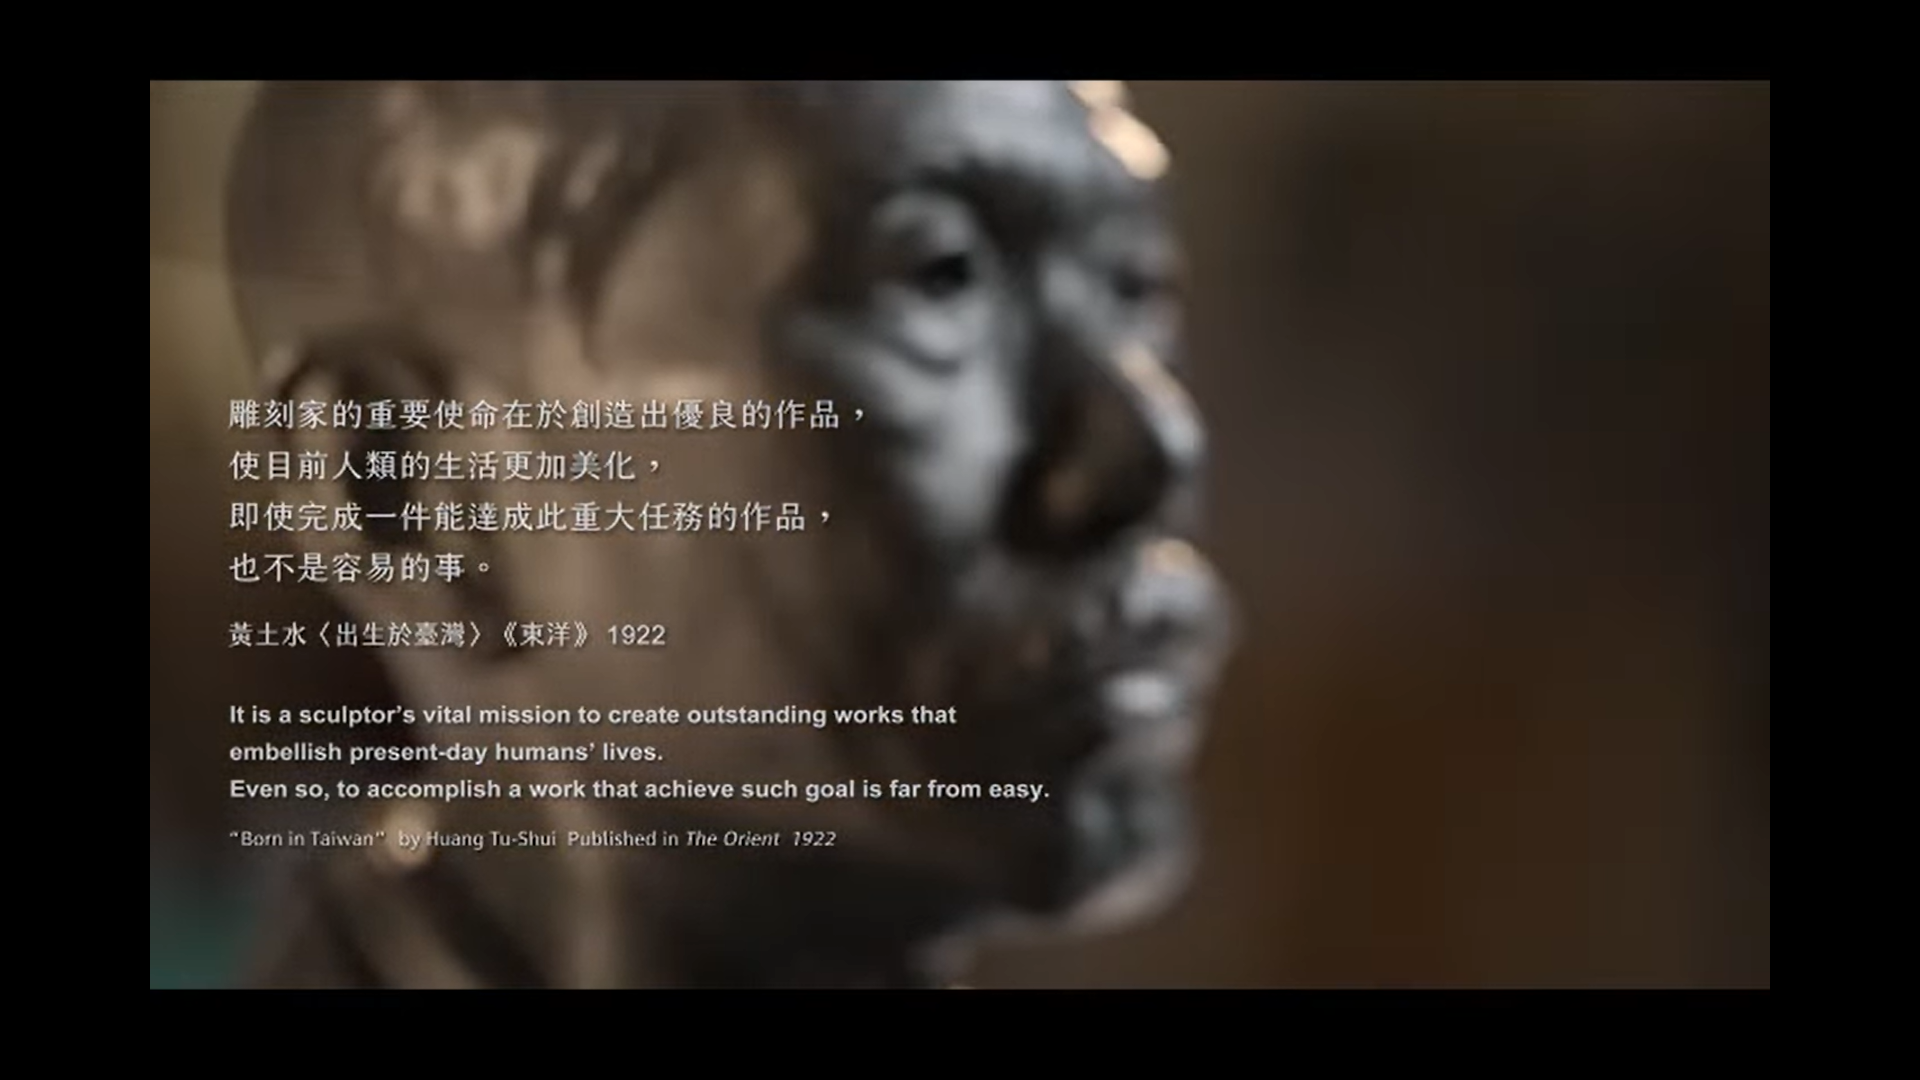 雕刻時光-黃土水〈山本悌二郎〉 胸像修復翻製紀錄影片的焦點圖